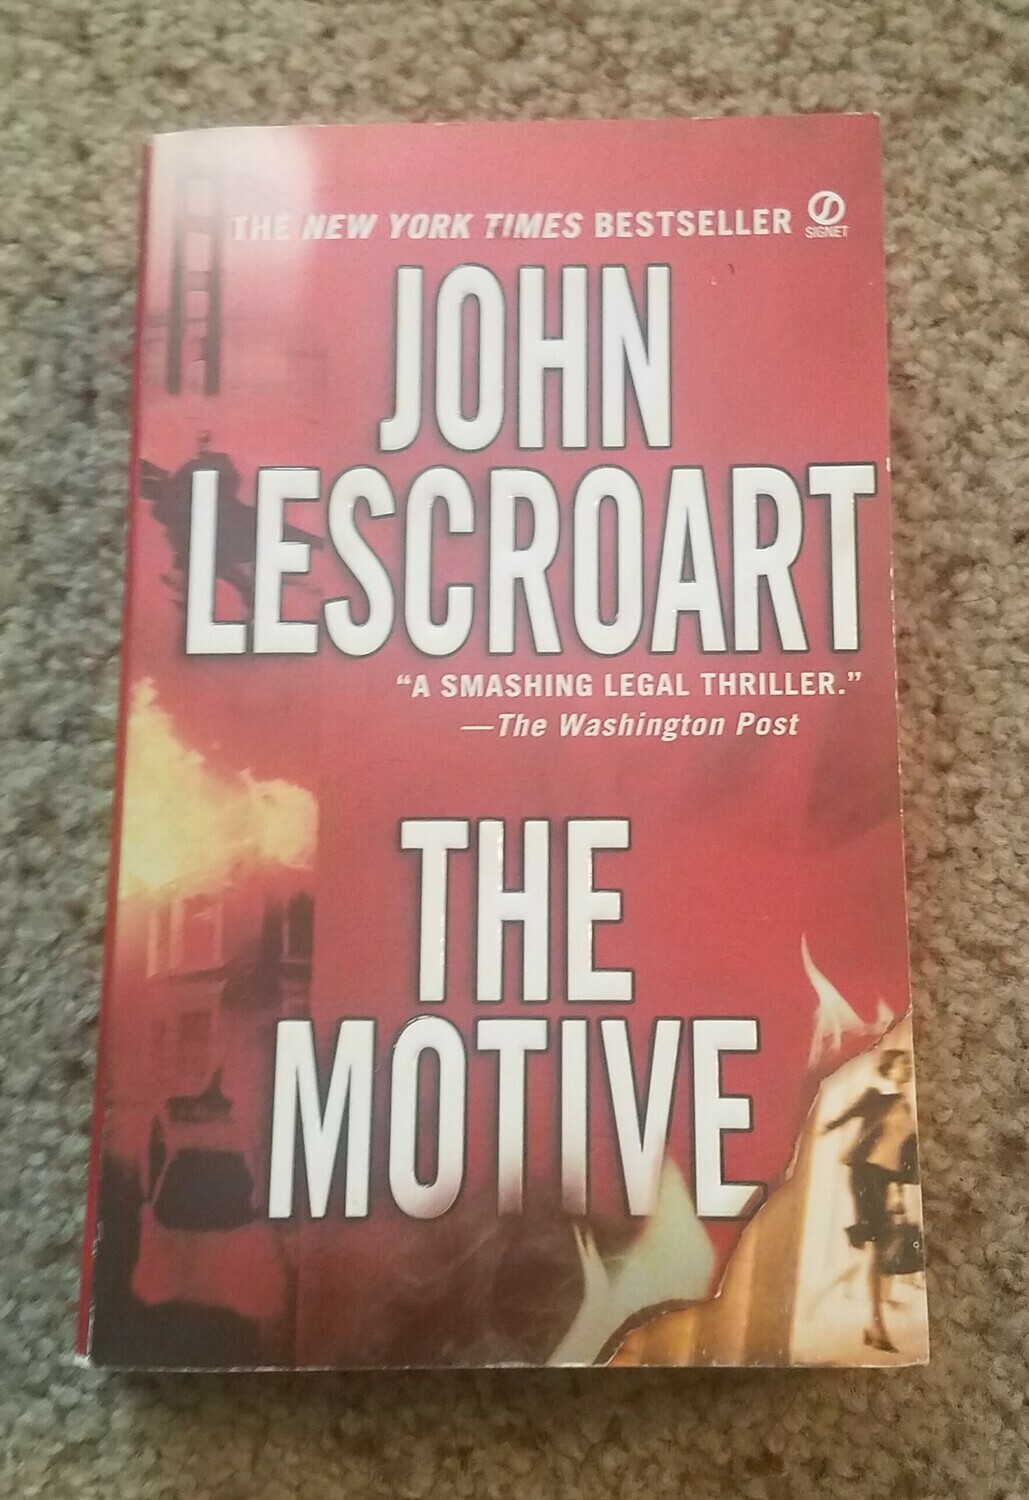 The Motive by John Lescroart